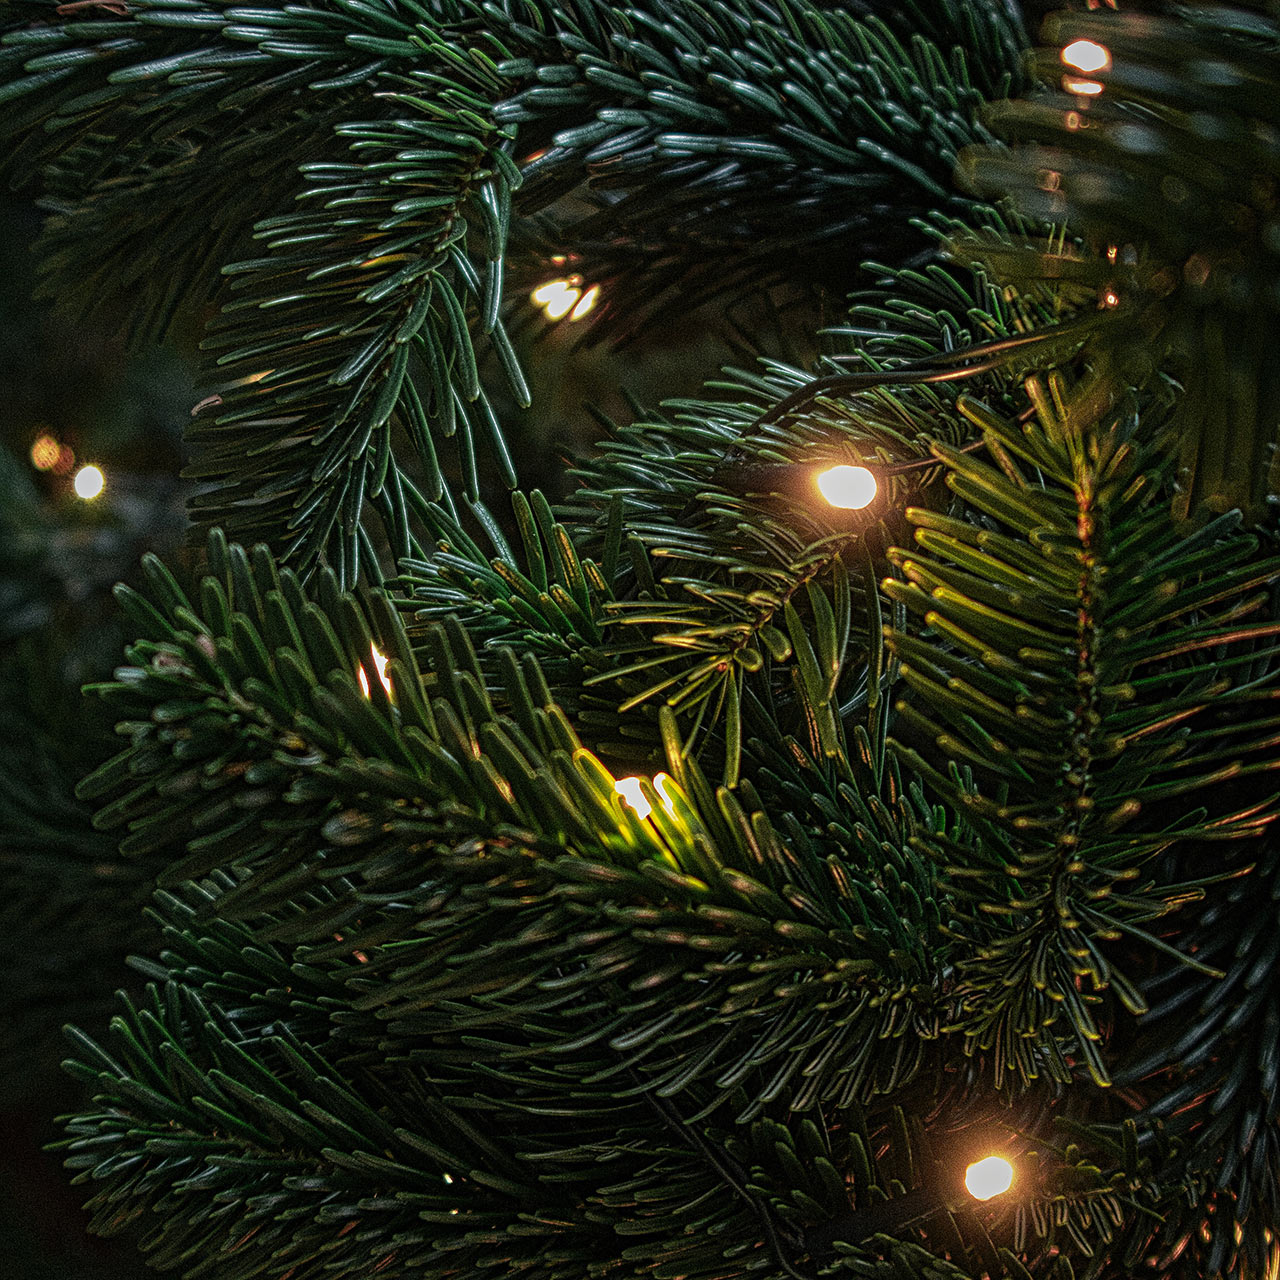 Vánoční LED řetězy jsou stylové a mají ekonomický provoz